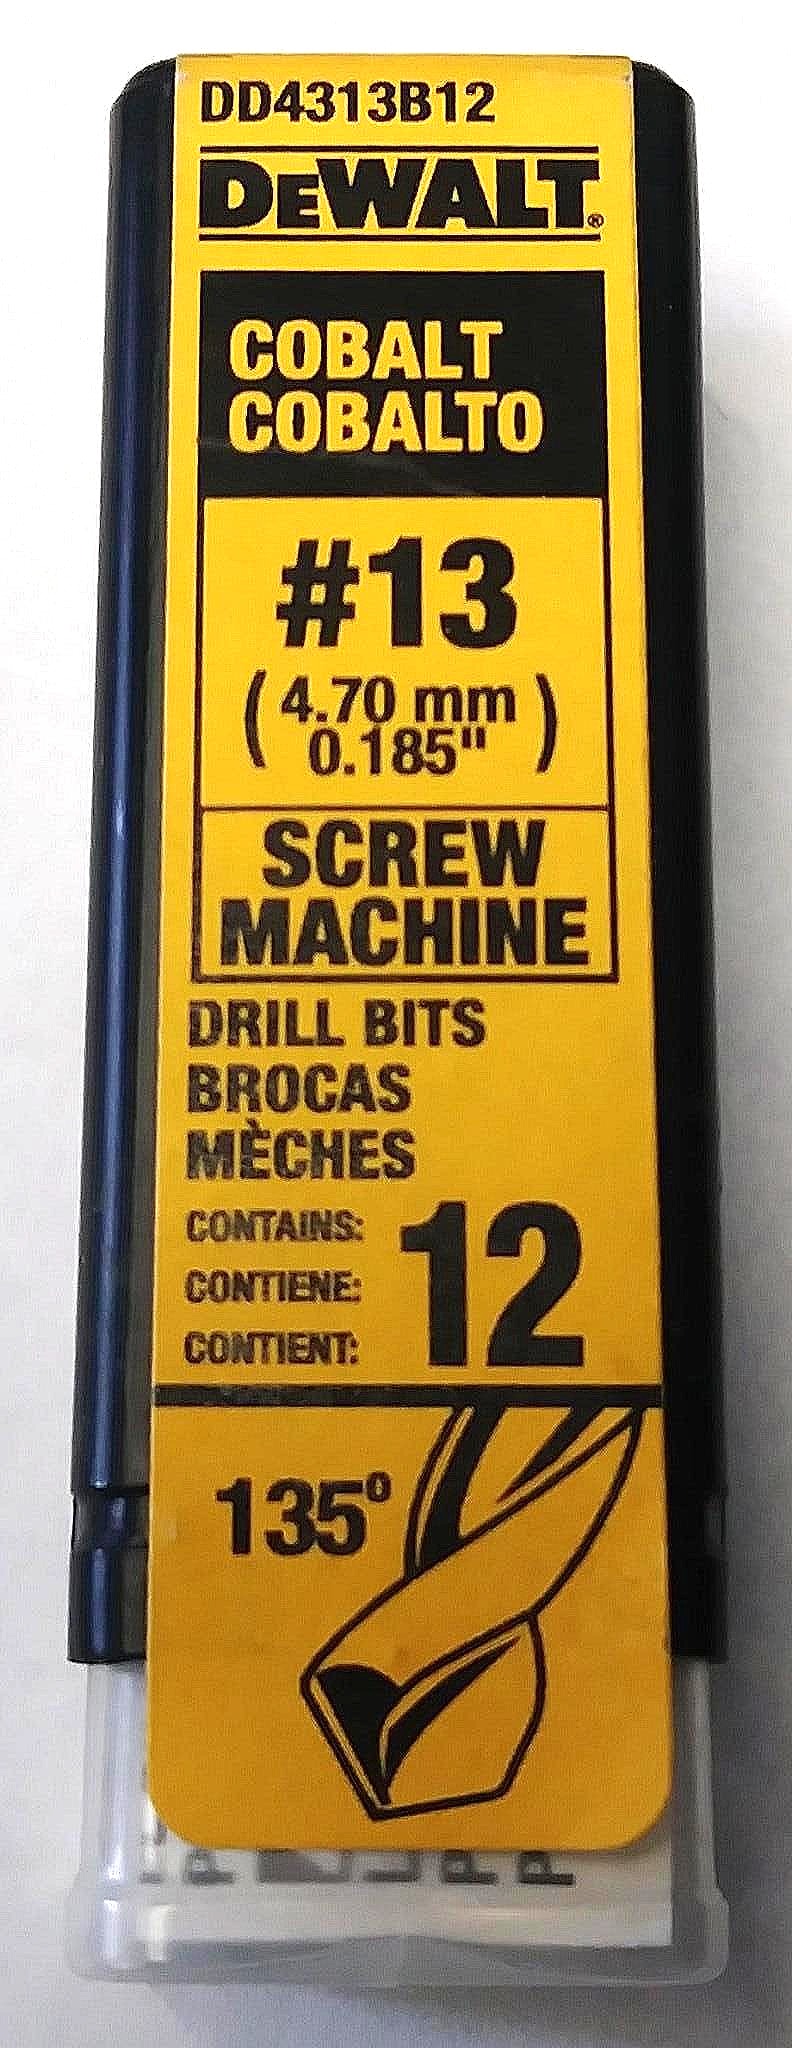 Dewalt DD4313B12 #13 Cobalt Screw Machine Drill Bits 12 Pack Germany